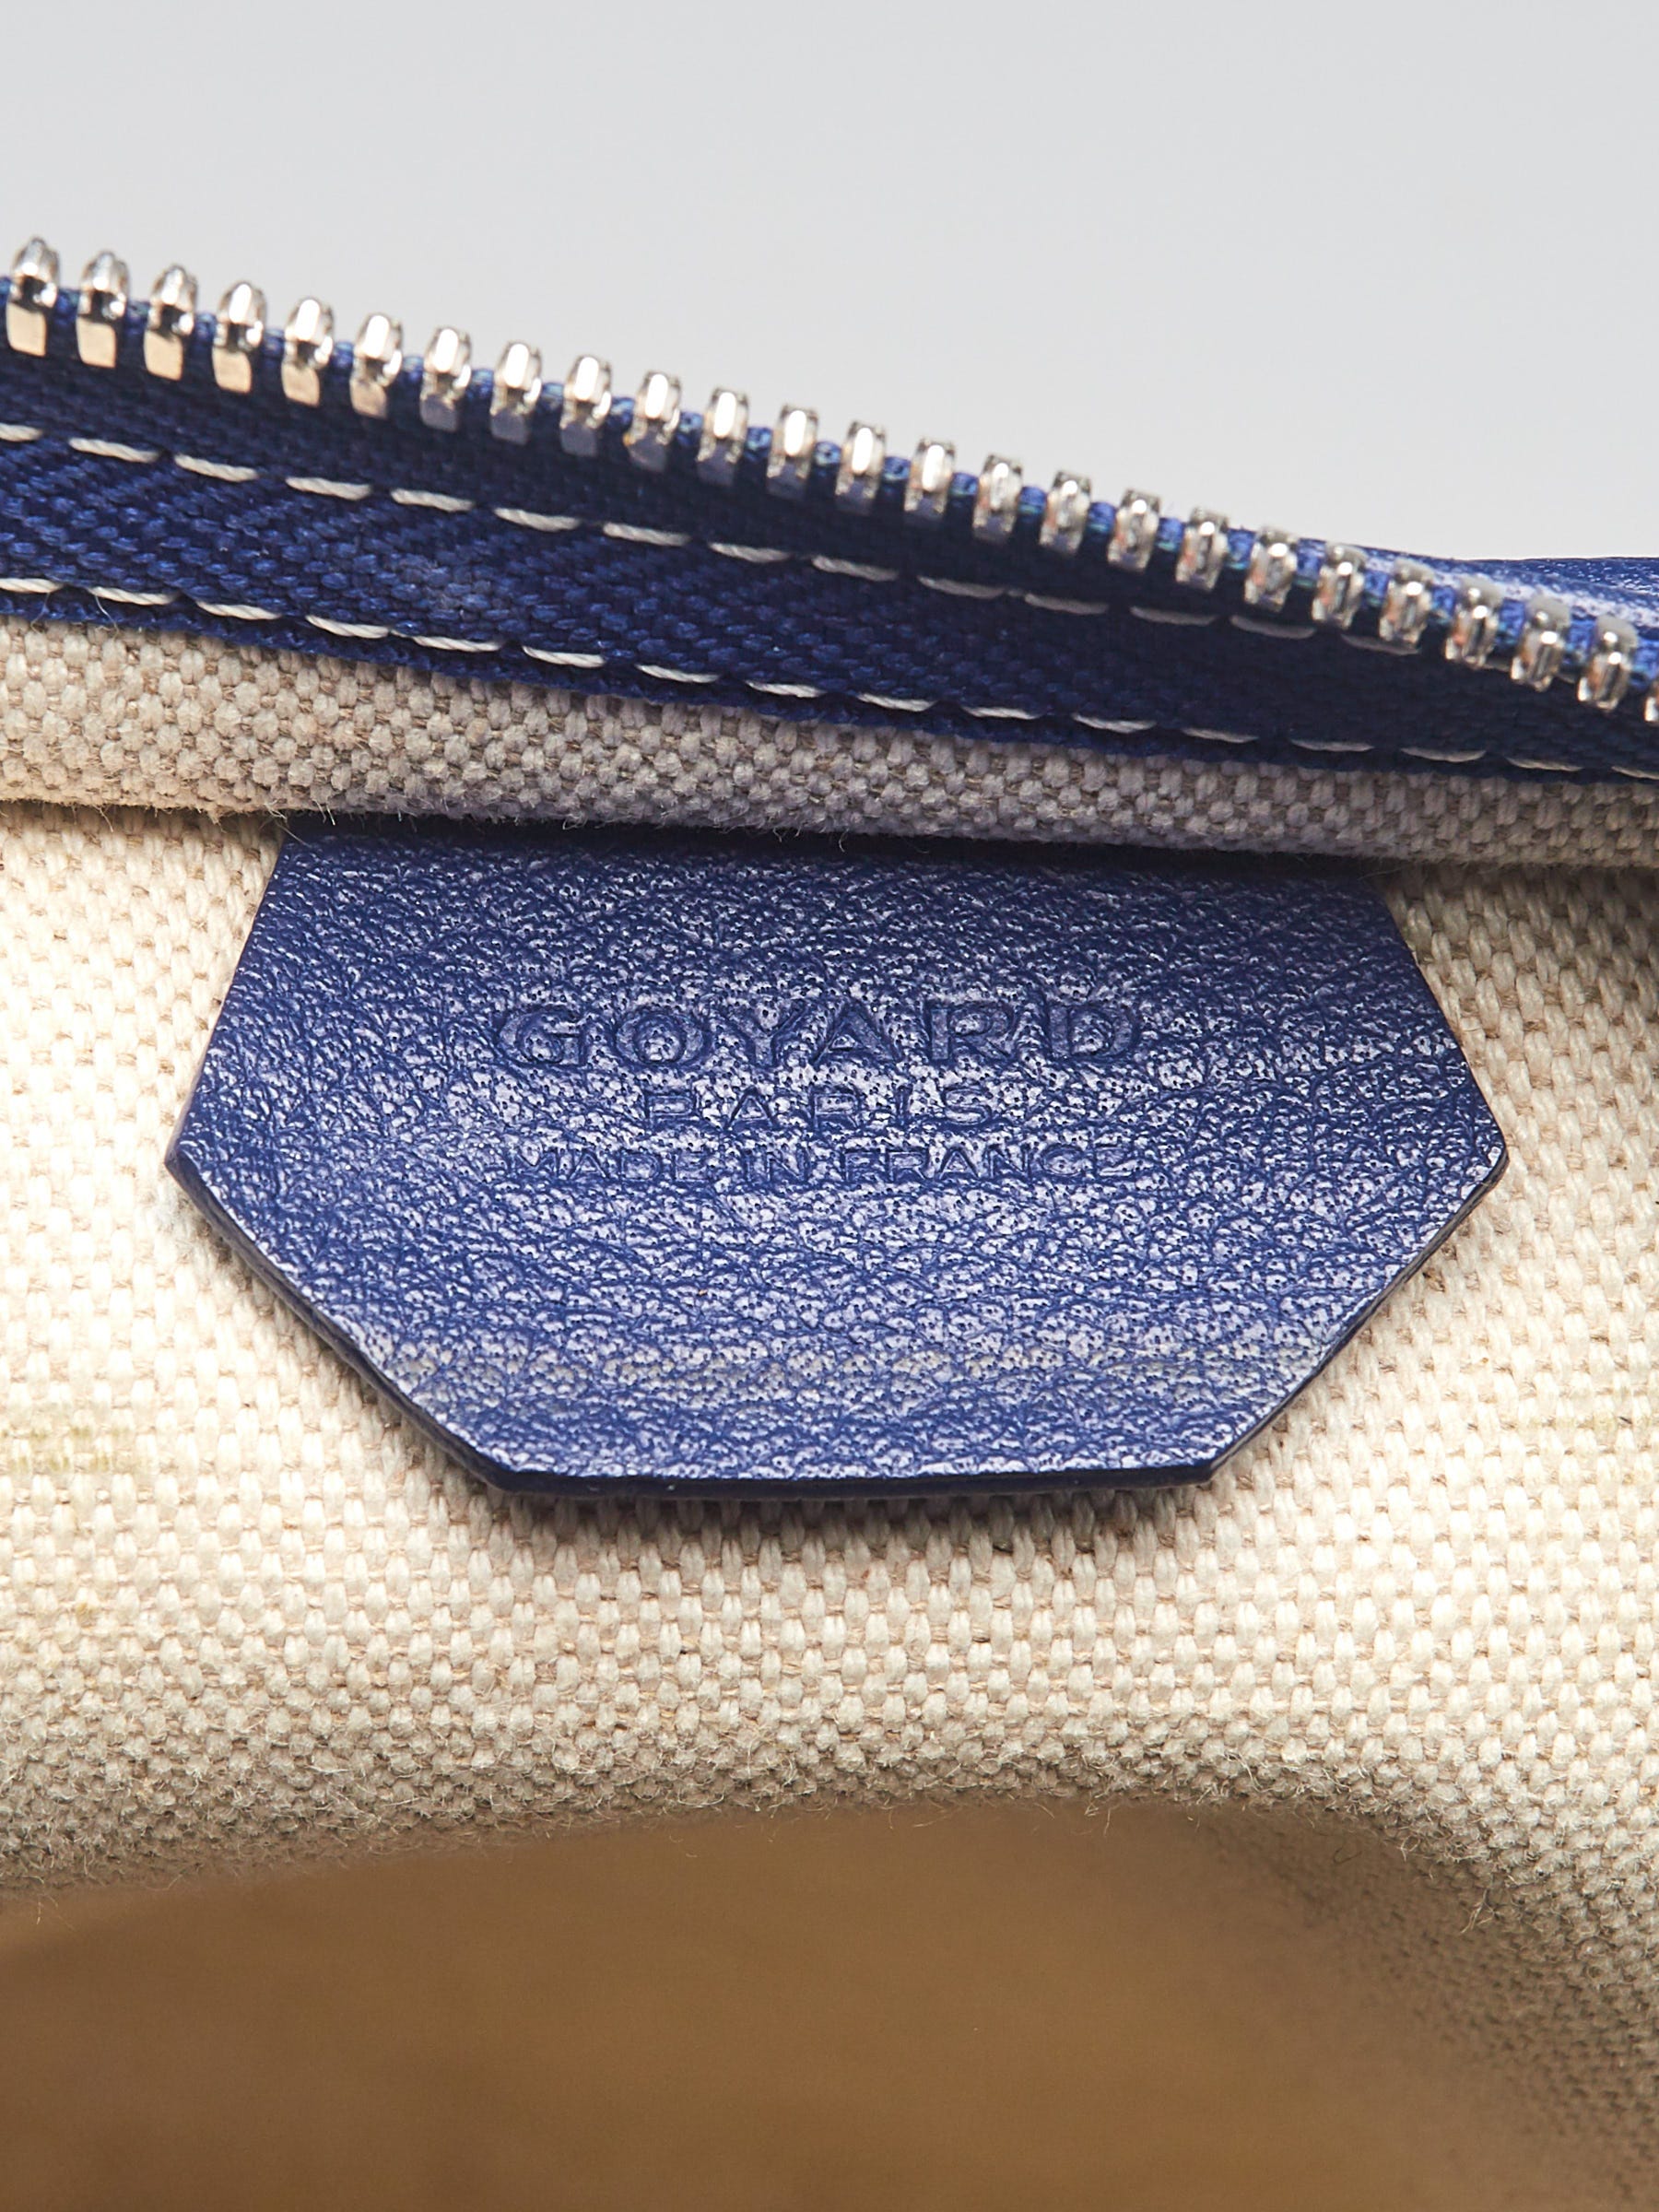 Pre-owned Authentic GOYARD Grenadine Hobo Shoulder Bag - Light